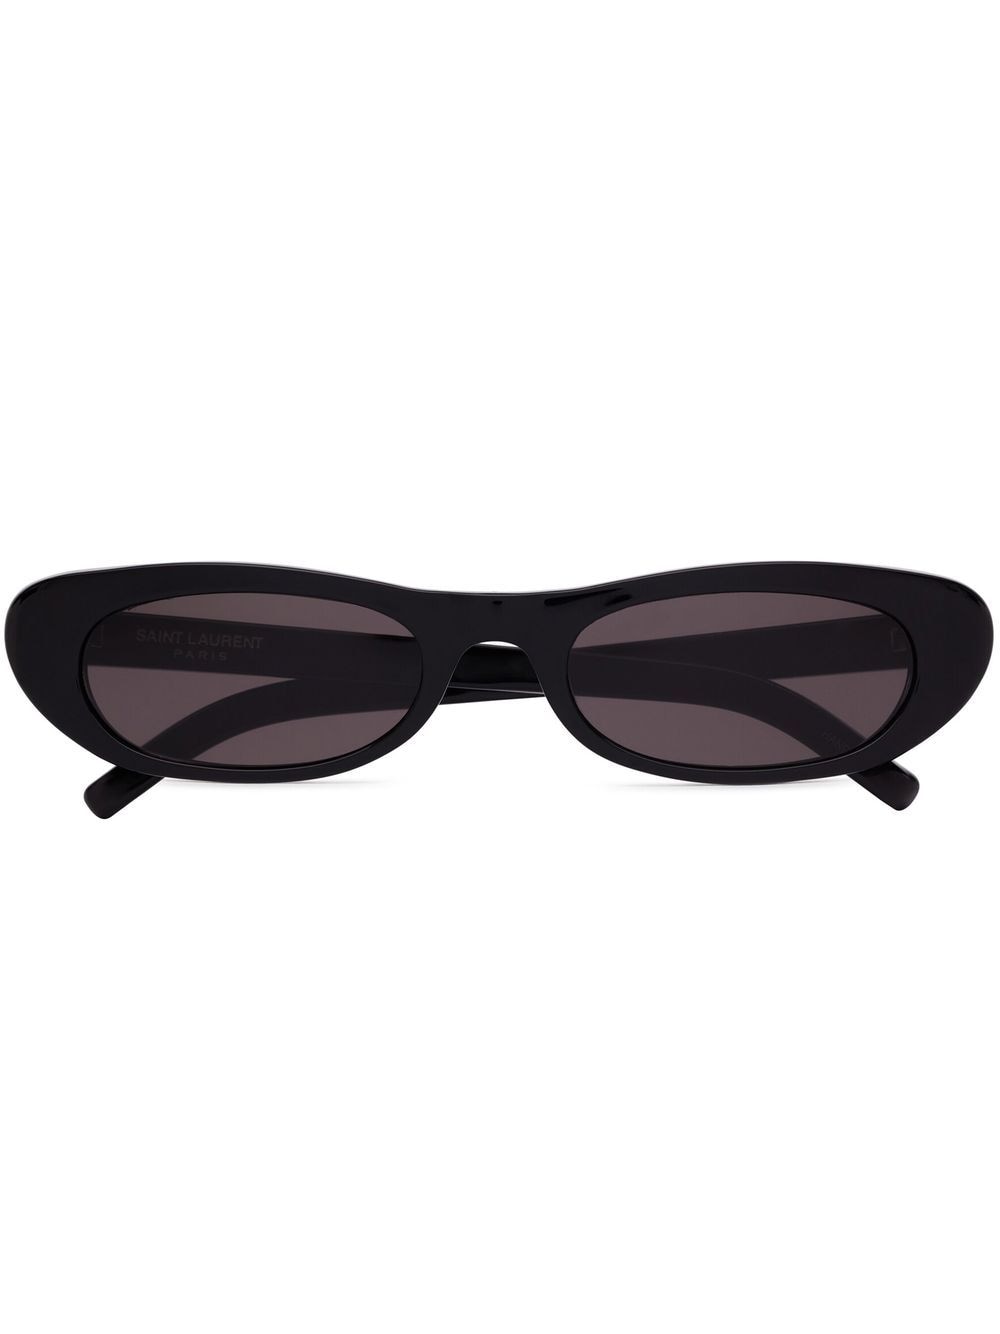 Saint Laurent Eyewear SL 557 Shade Sonnenbrille - Schwarz von Saint Laurent Eyewear